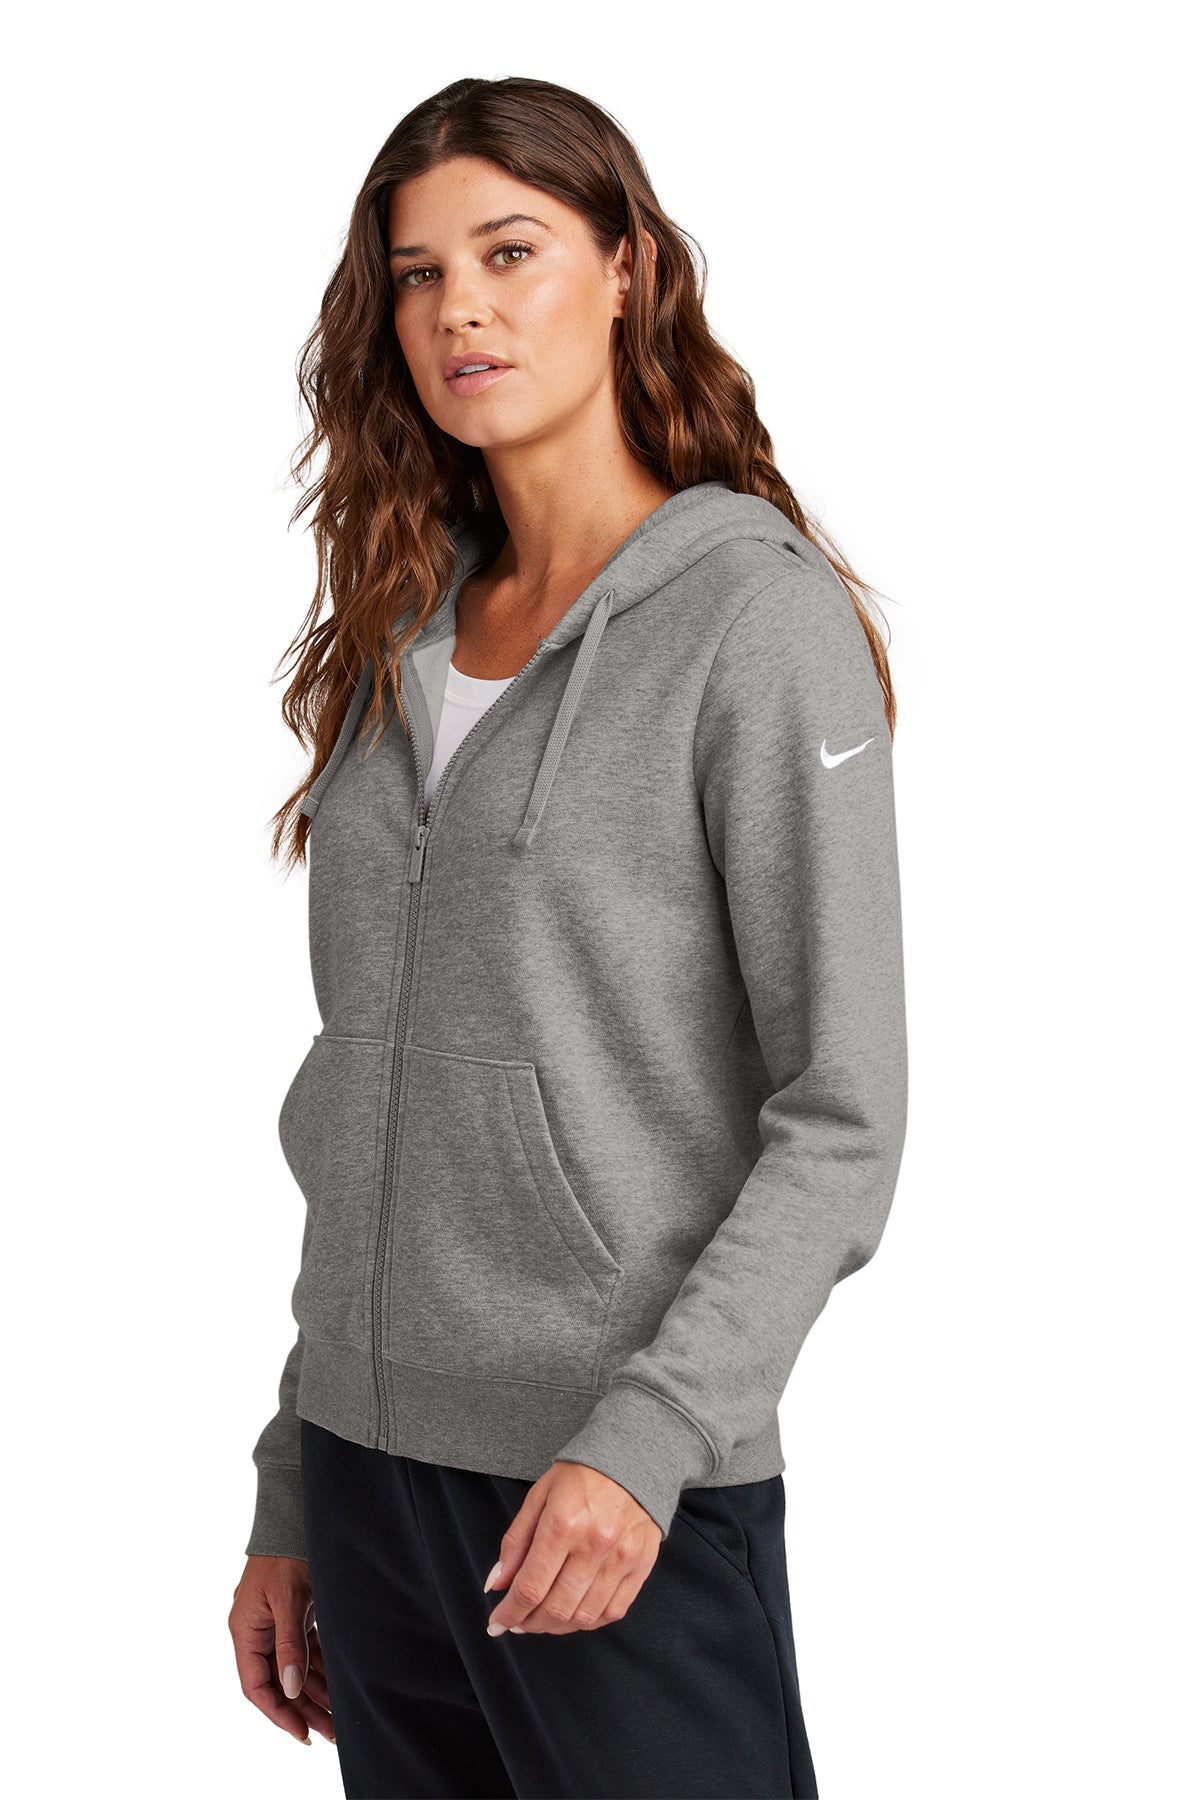 Nike Ladies Club Fleece Full-Zip Custom Hoodies, Charcoal Heather